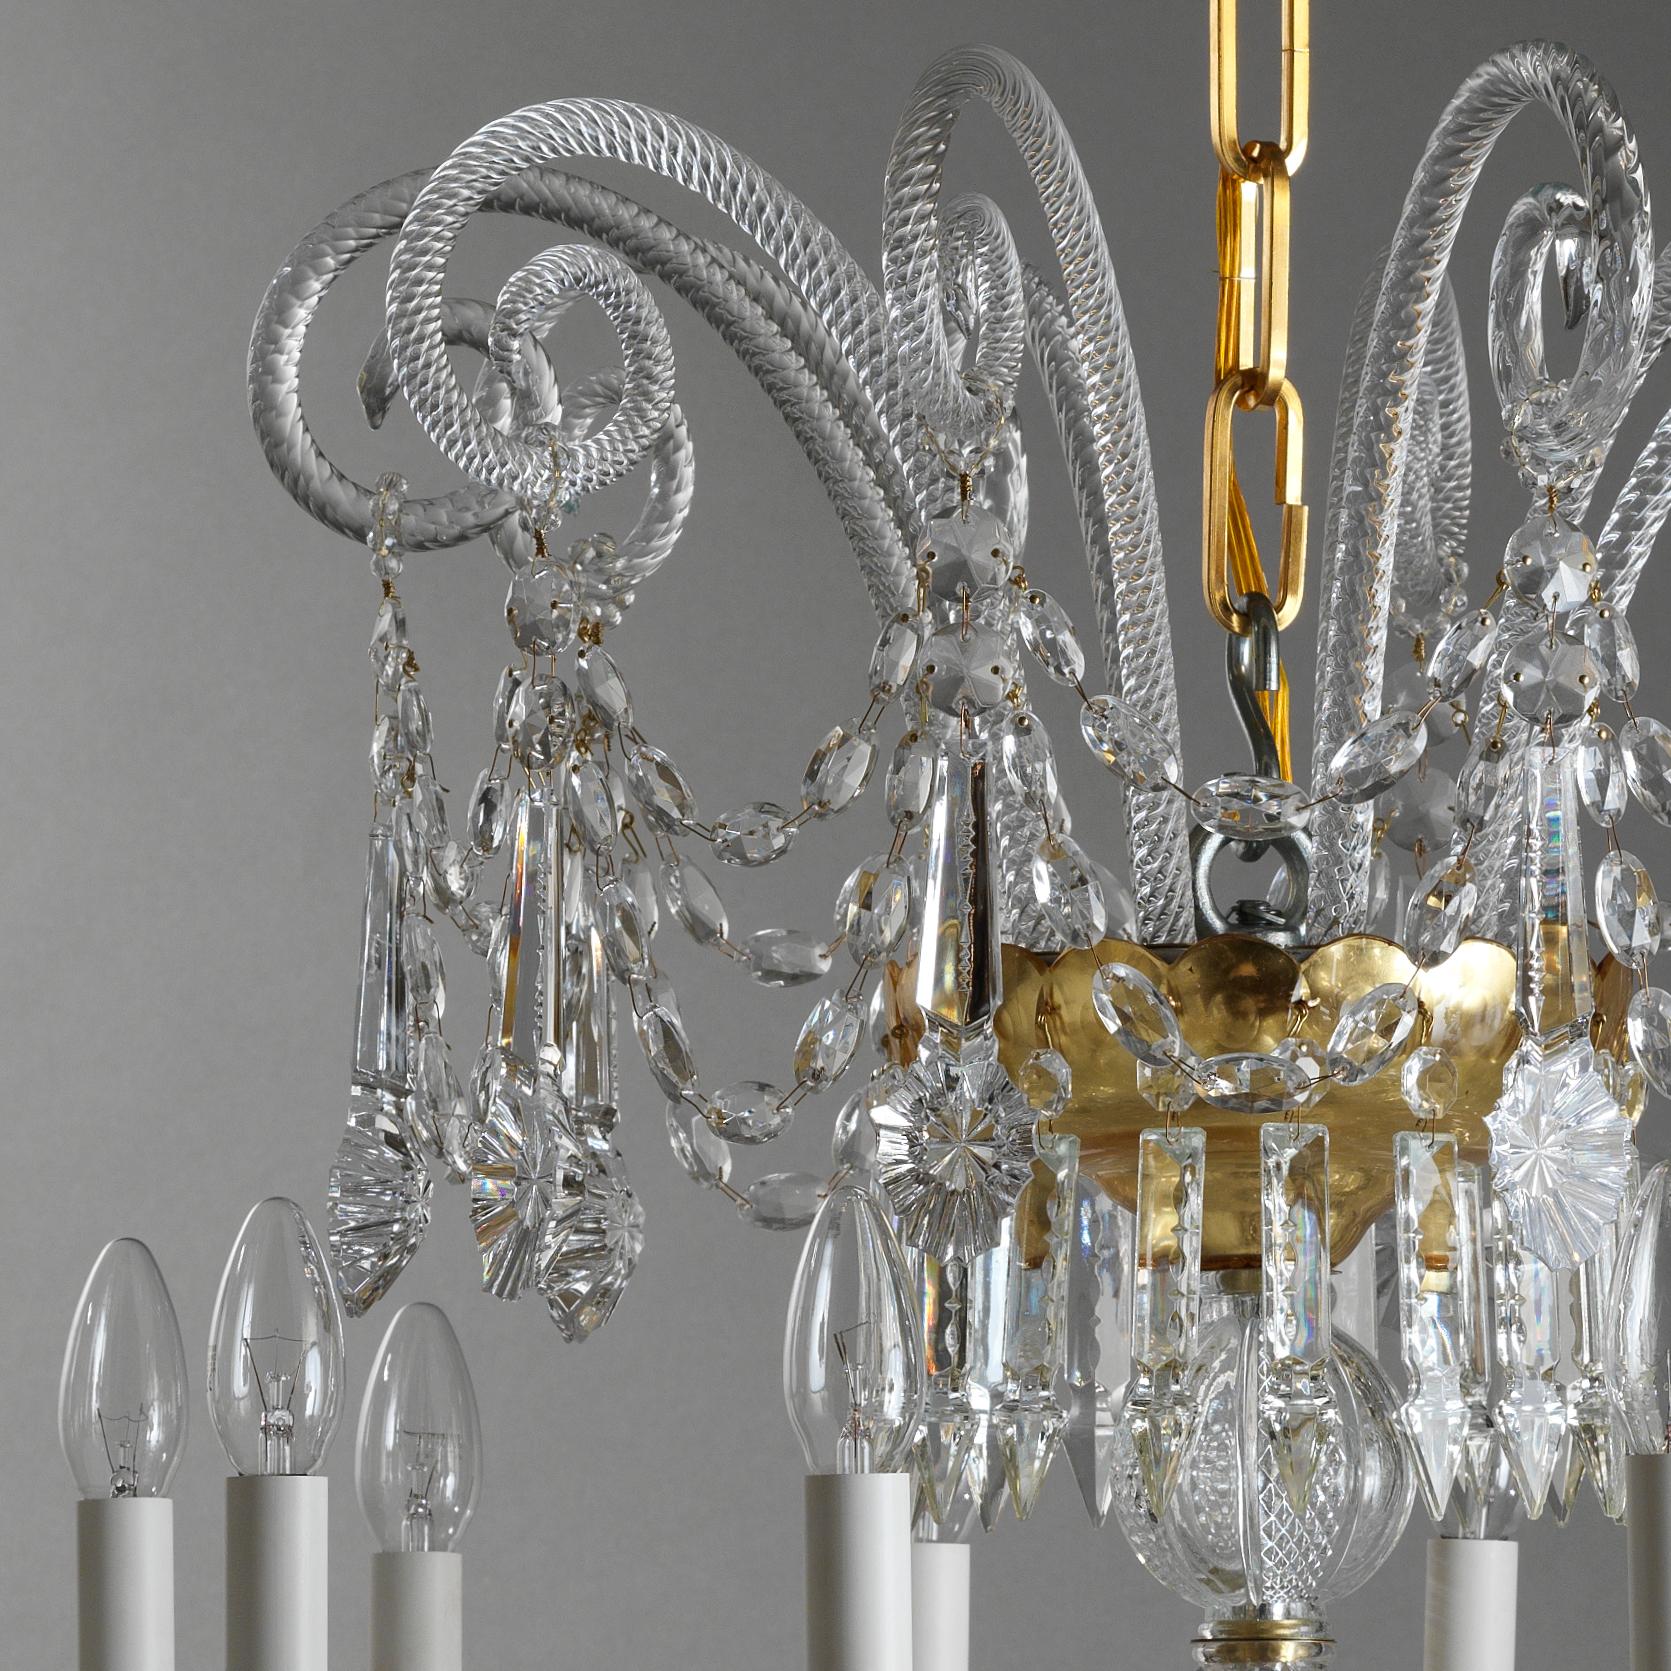 Dieser Kronleuchter aus Kristall und mundgeblasenem Glas im Stil des 18. Jahrhunderts von Gherardo Degli Albizzi ist in transparenter Farbe mit vergoldeten Schalen ausgeführt. Dieser Kronleuchter besteht aus drei Zweigschichten. Die obere Krone